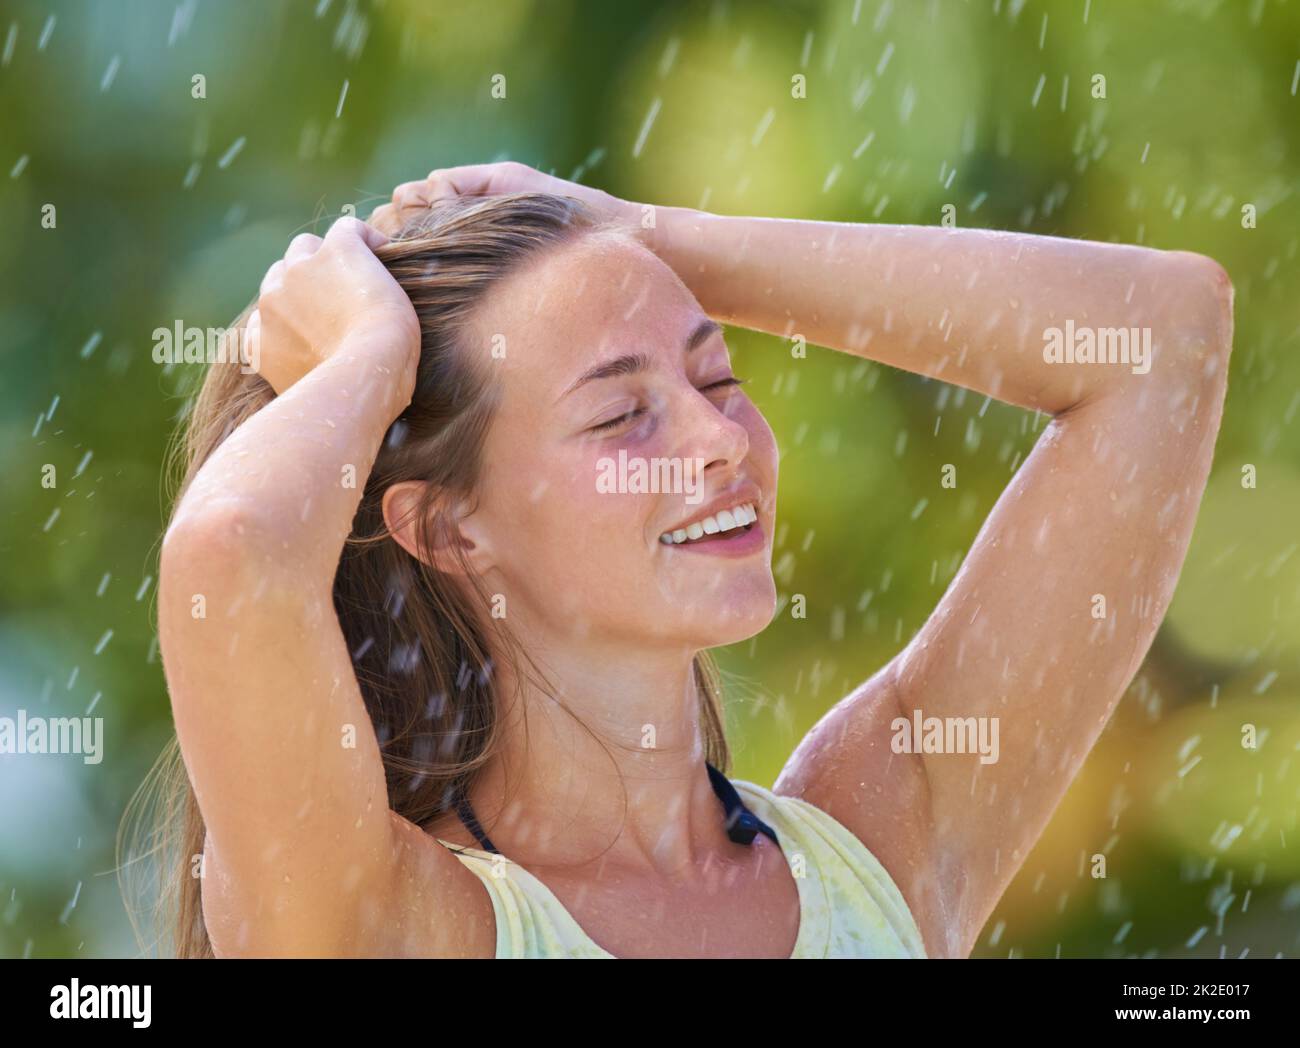 Pluie estivale sensationnelle. Photo courte d'une jeune femme debout avec joie sous la pluie. Banque D'Images